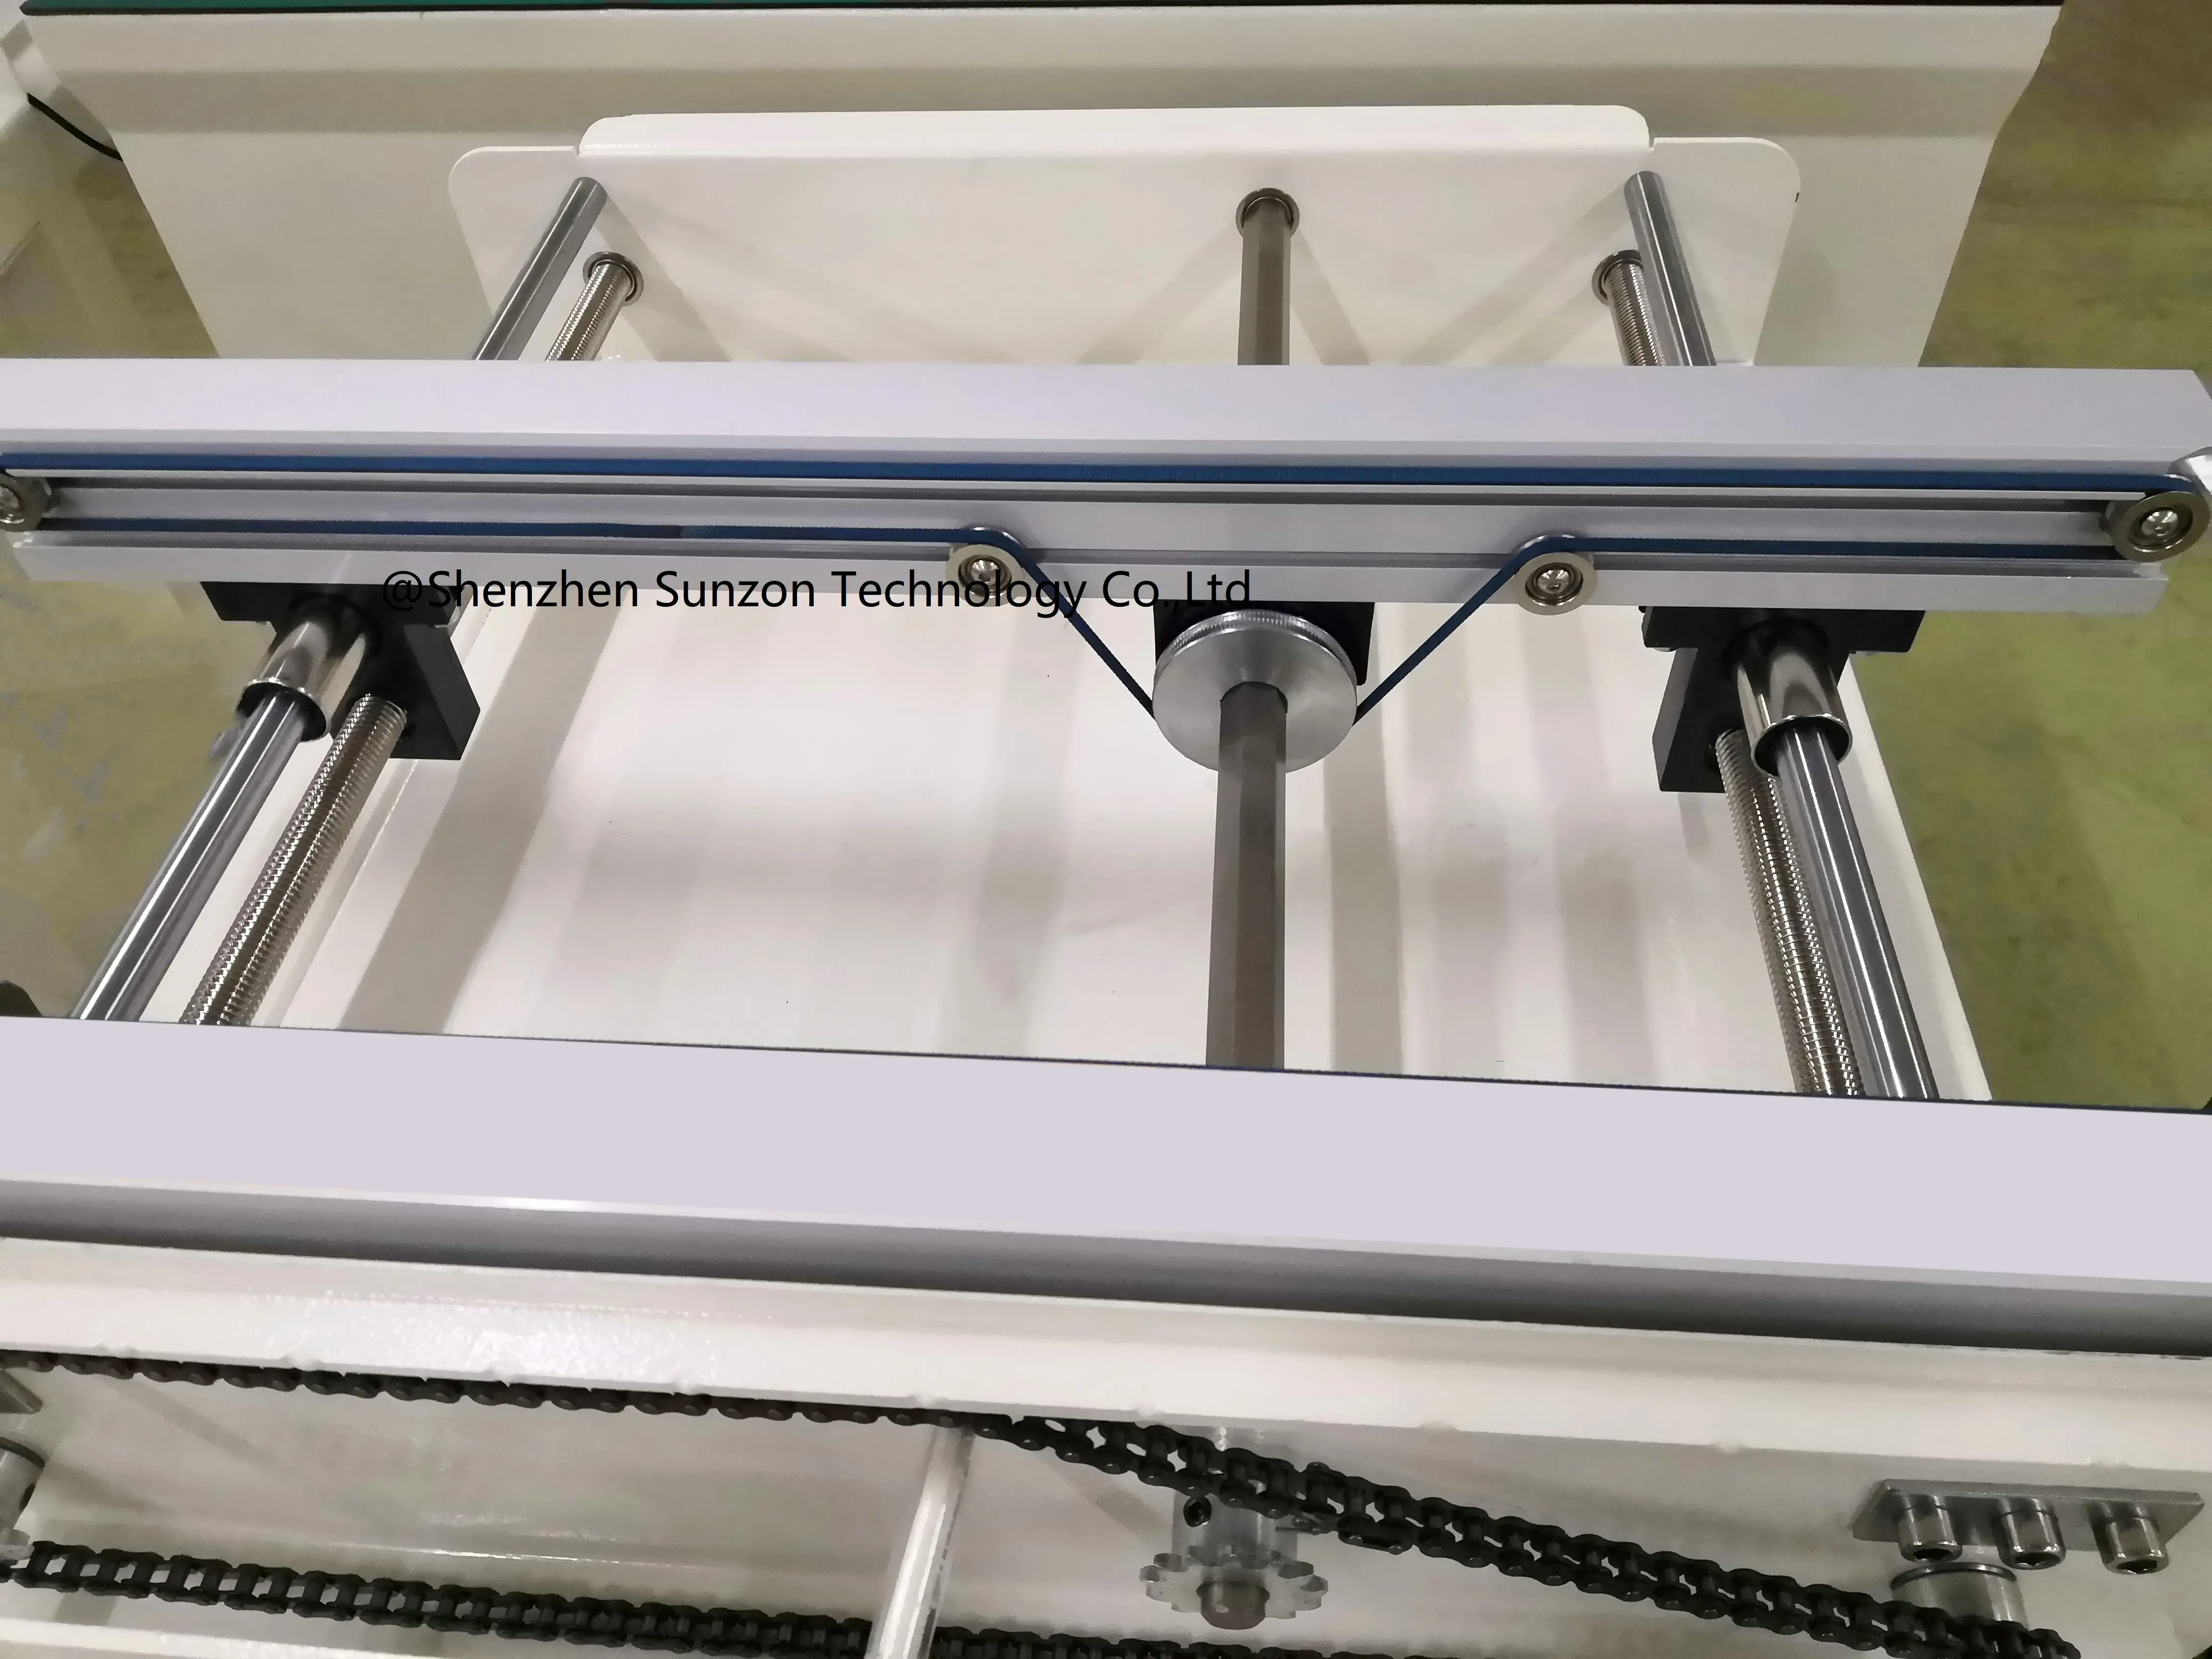 DC-250 Double rail SMT conveyor for smt production line SunzonTech - pcb conveyor manufacturers